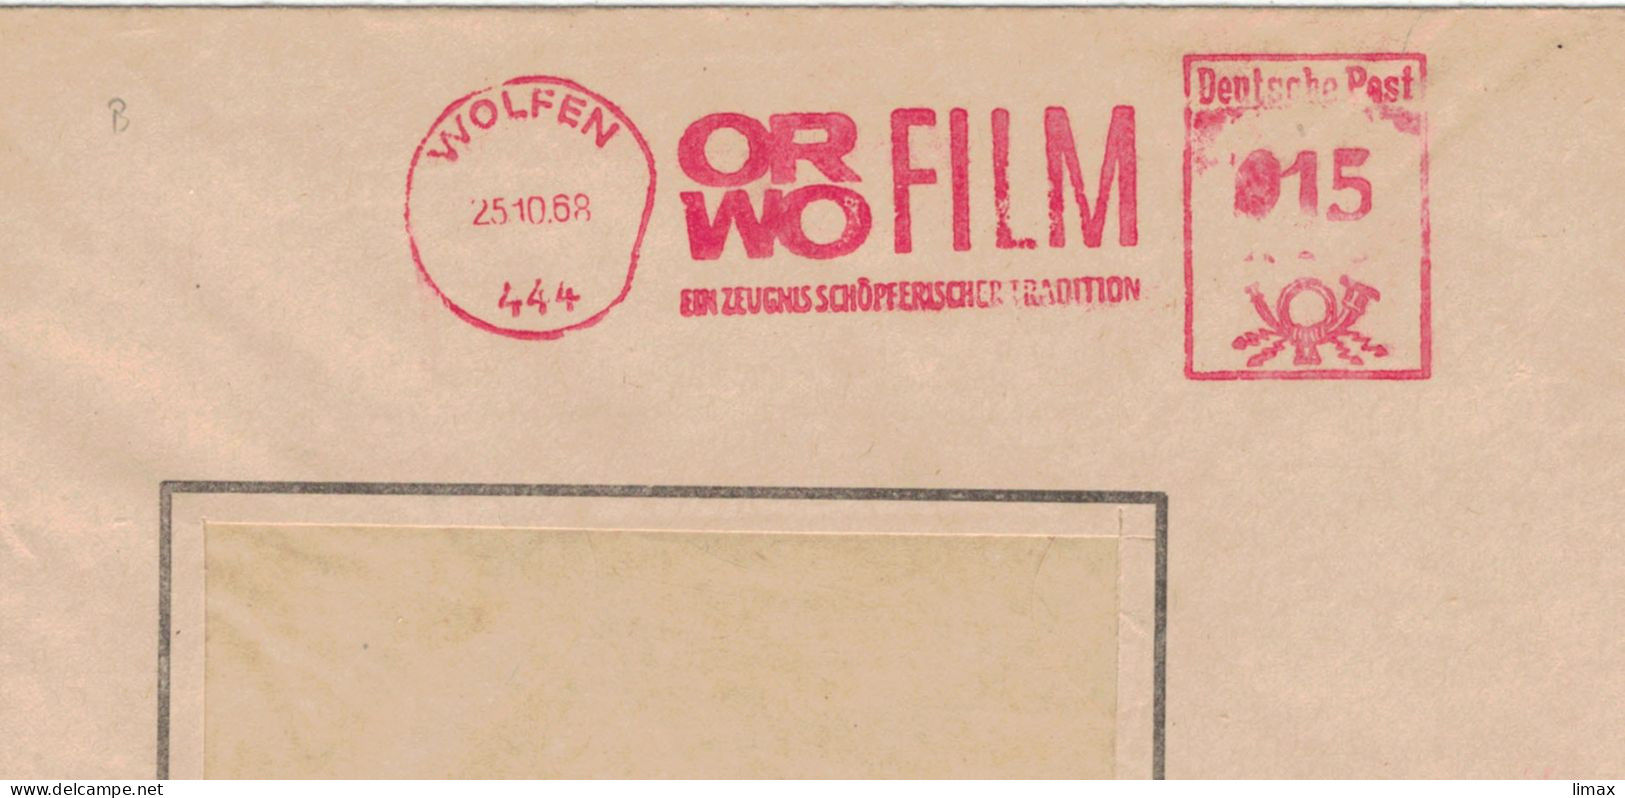 444 Wolfen 1968 Zeugnis Schöpferischer Tradition ORWO Film - Ehem. IG Farben - 1945 Patente An Eastman Kodak - Macchine Per Obliterare (EMA)